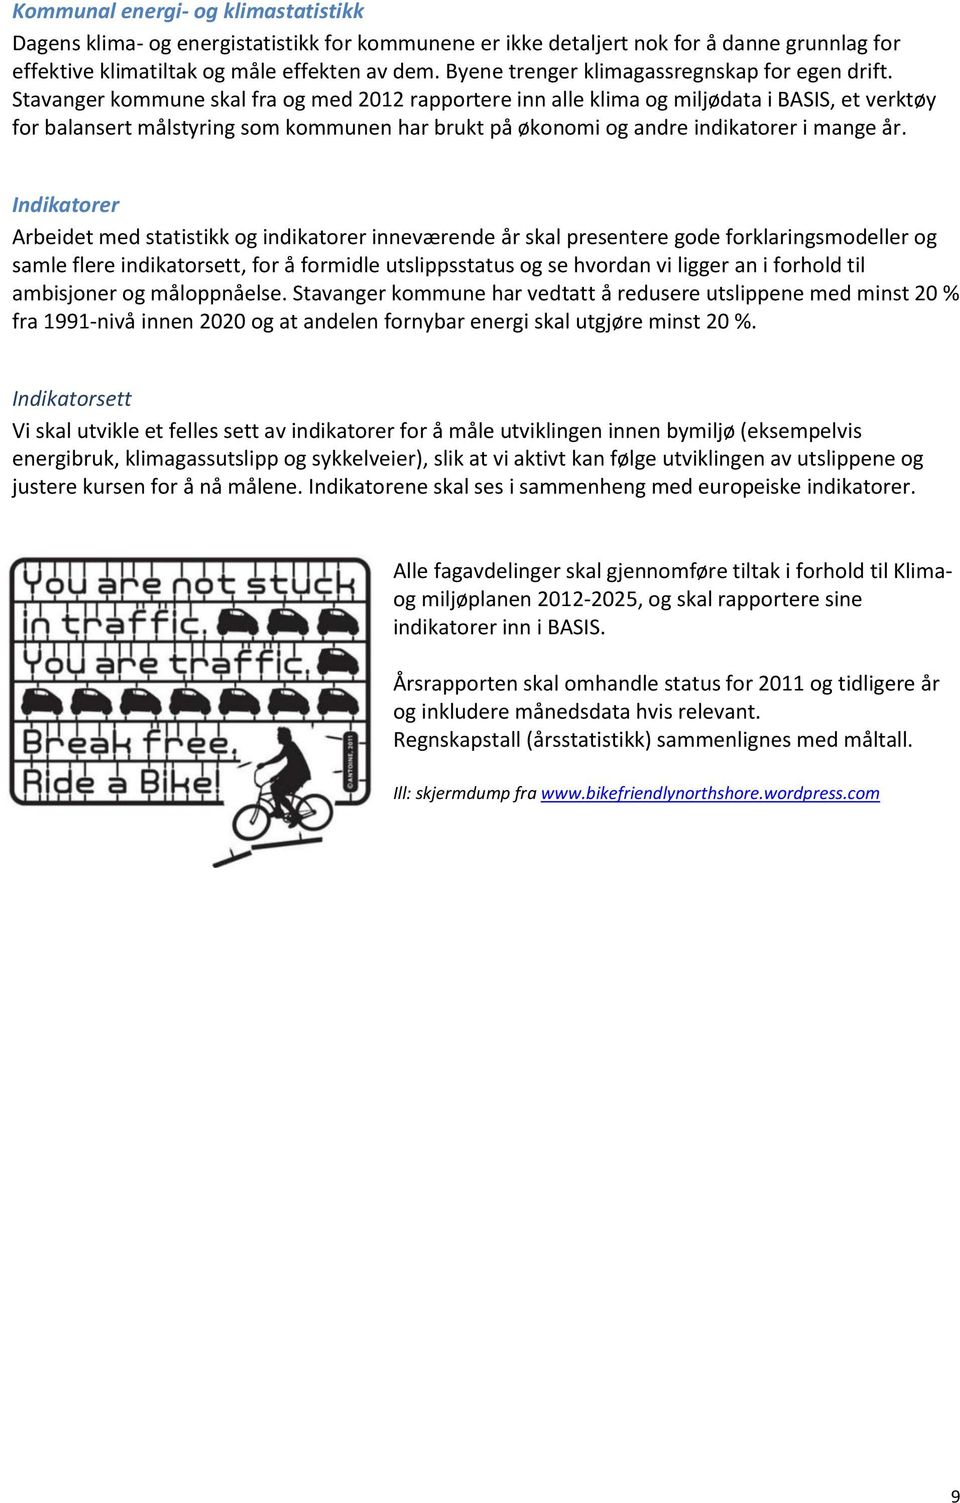 Stavanger kommune skal fra og med 2012 rapportere inn alle klima og miljødata i BASIS, et verktøy for balansert målstyring som kommunen har brukt på økonomi og andre indikatorer i mange år.